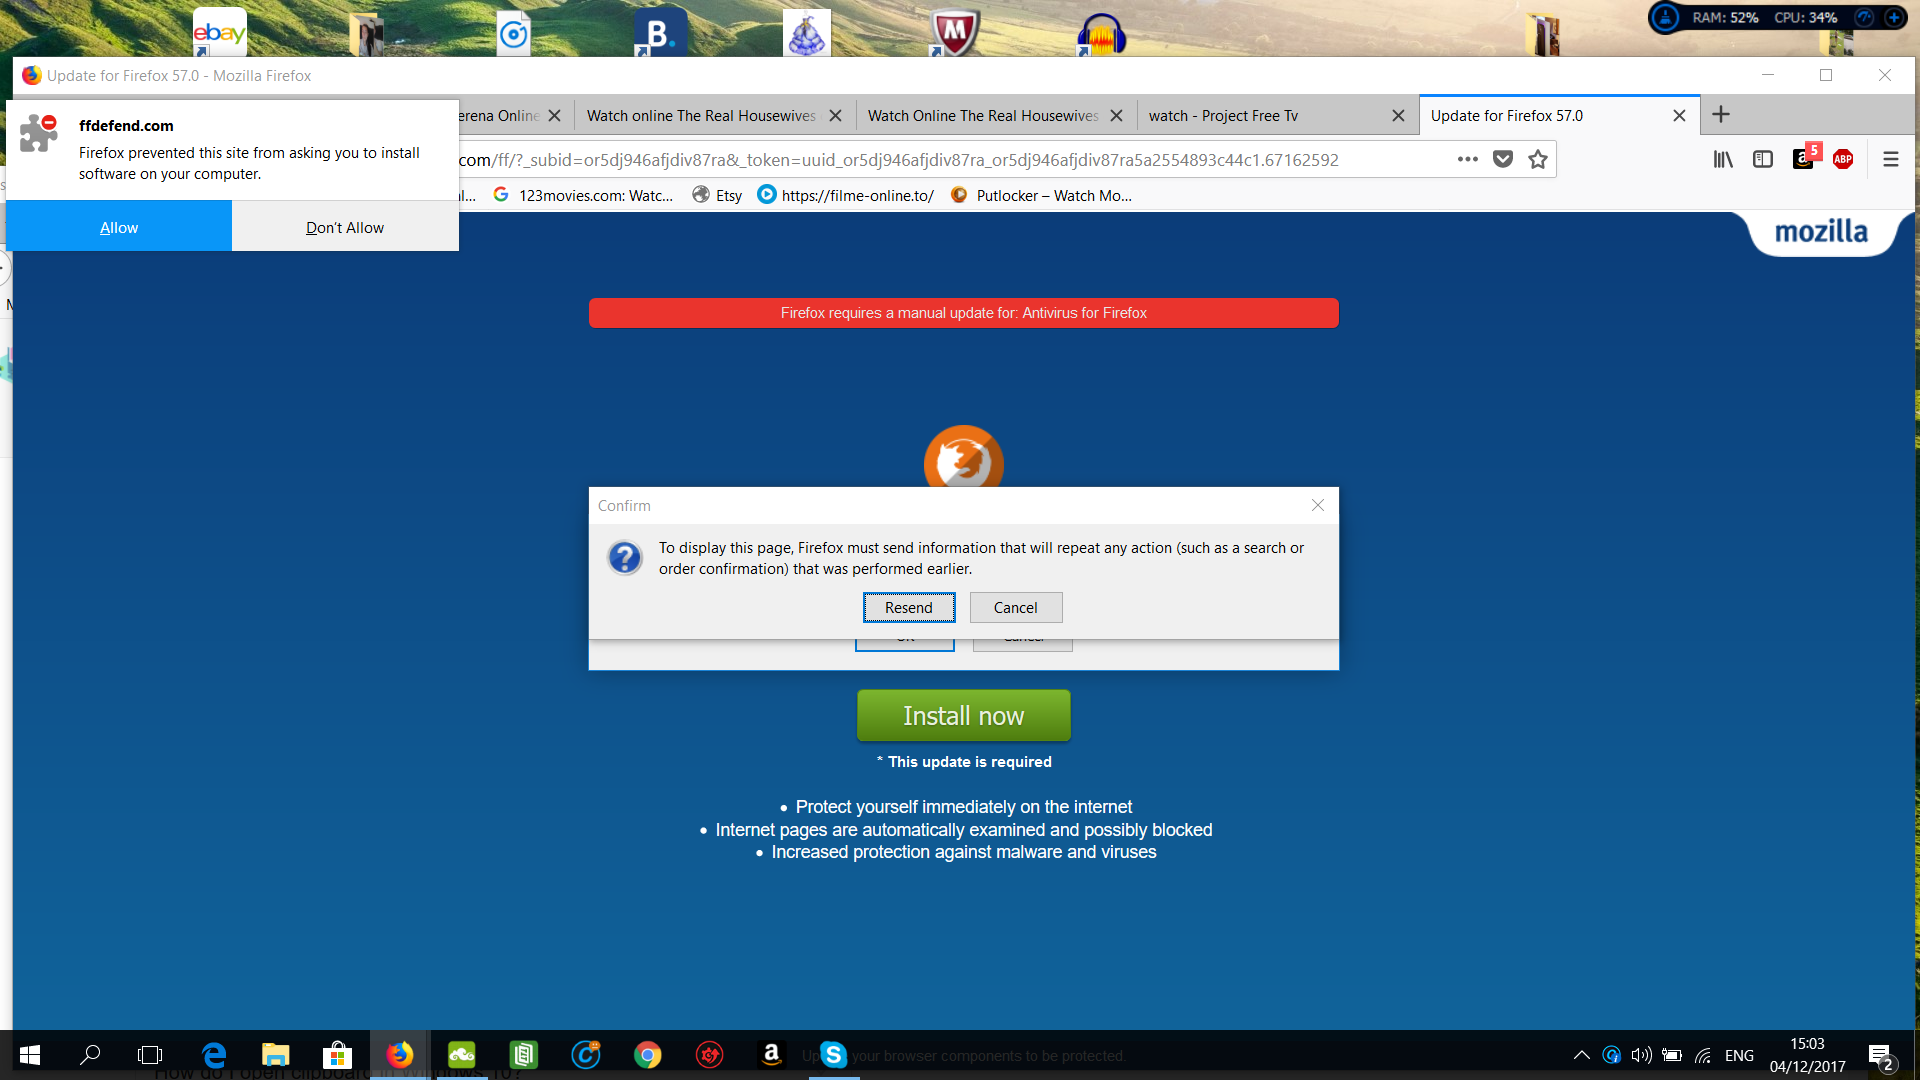 Como faço para ver meu Firefox em busca de malware?